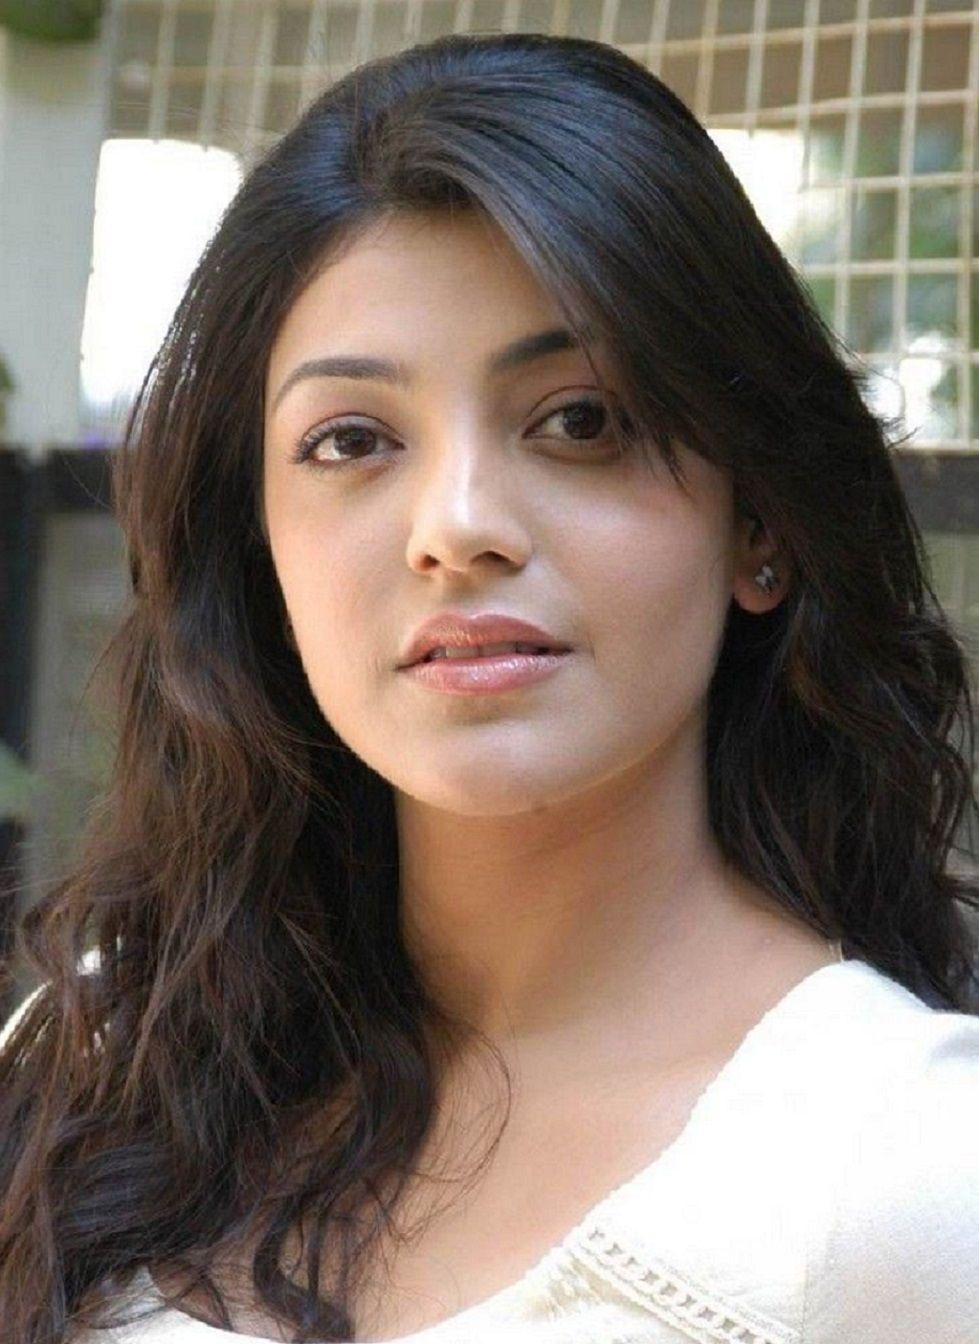 Tamil Actress Photo Gallery: Beautiful Tamil Actress Photo